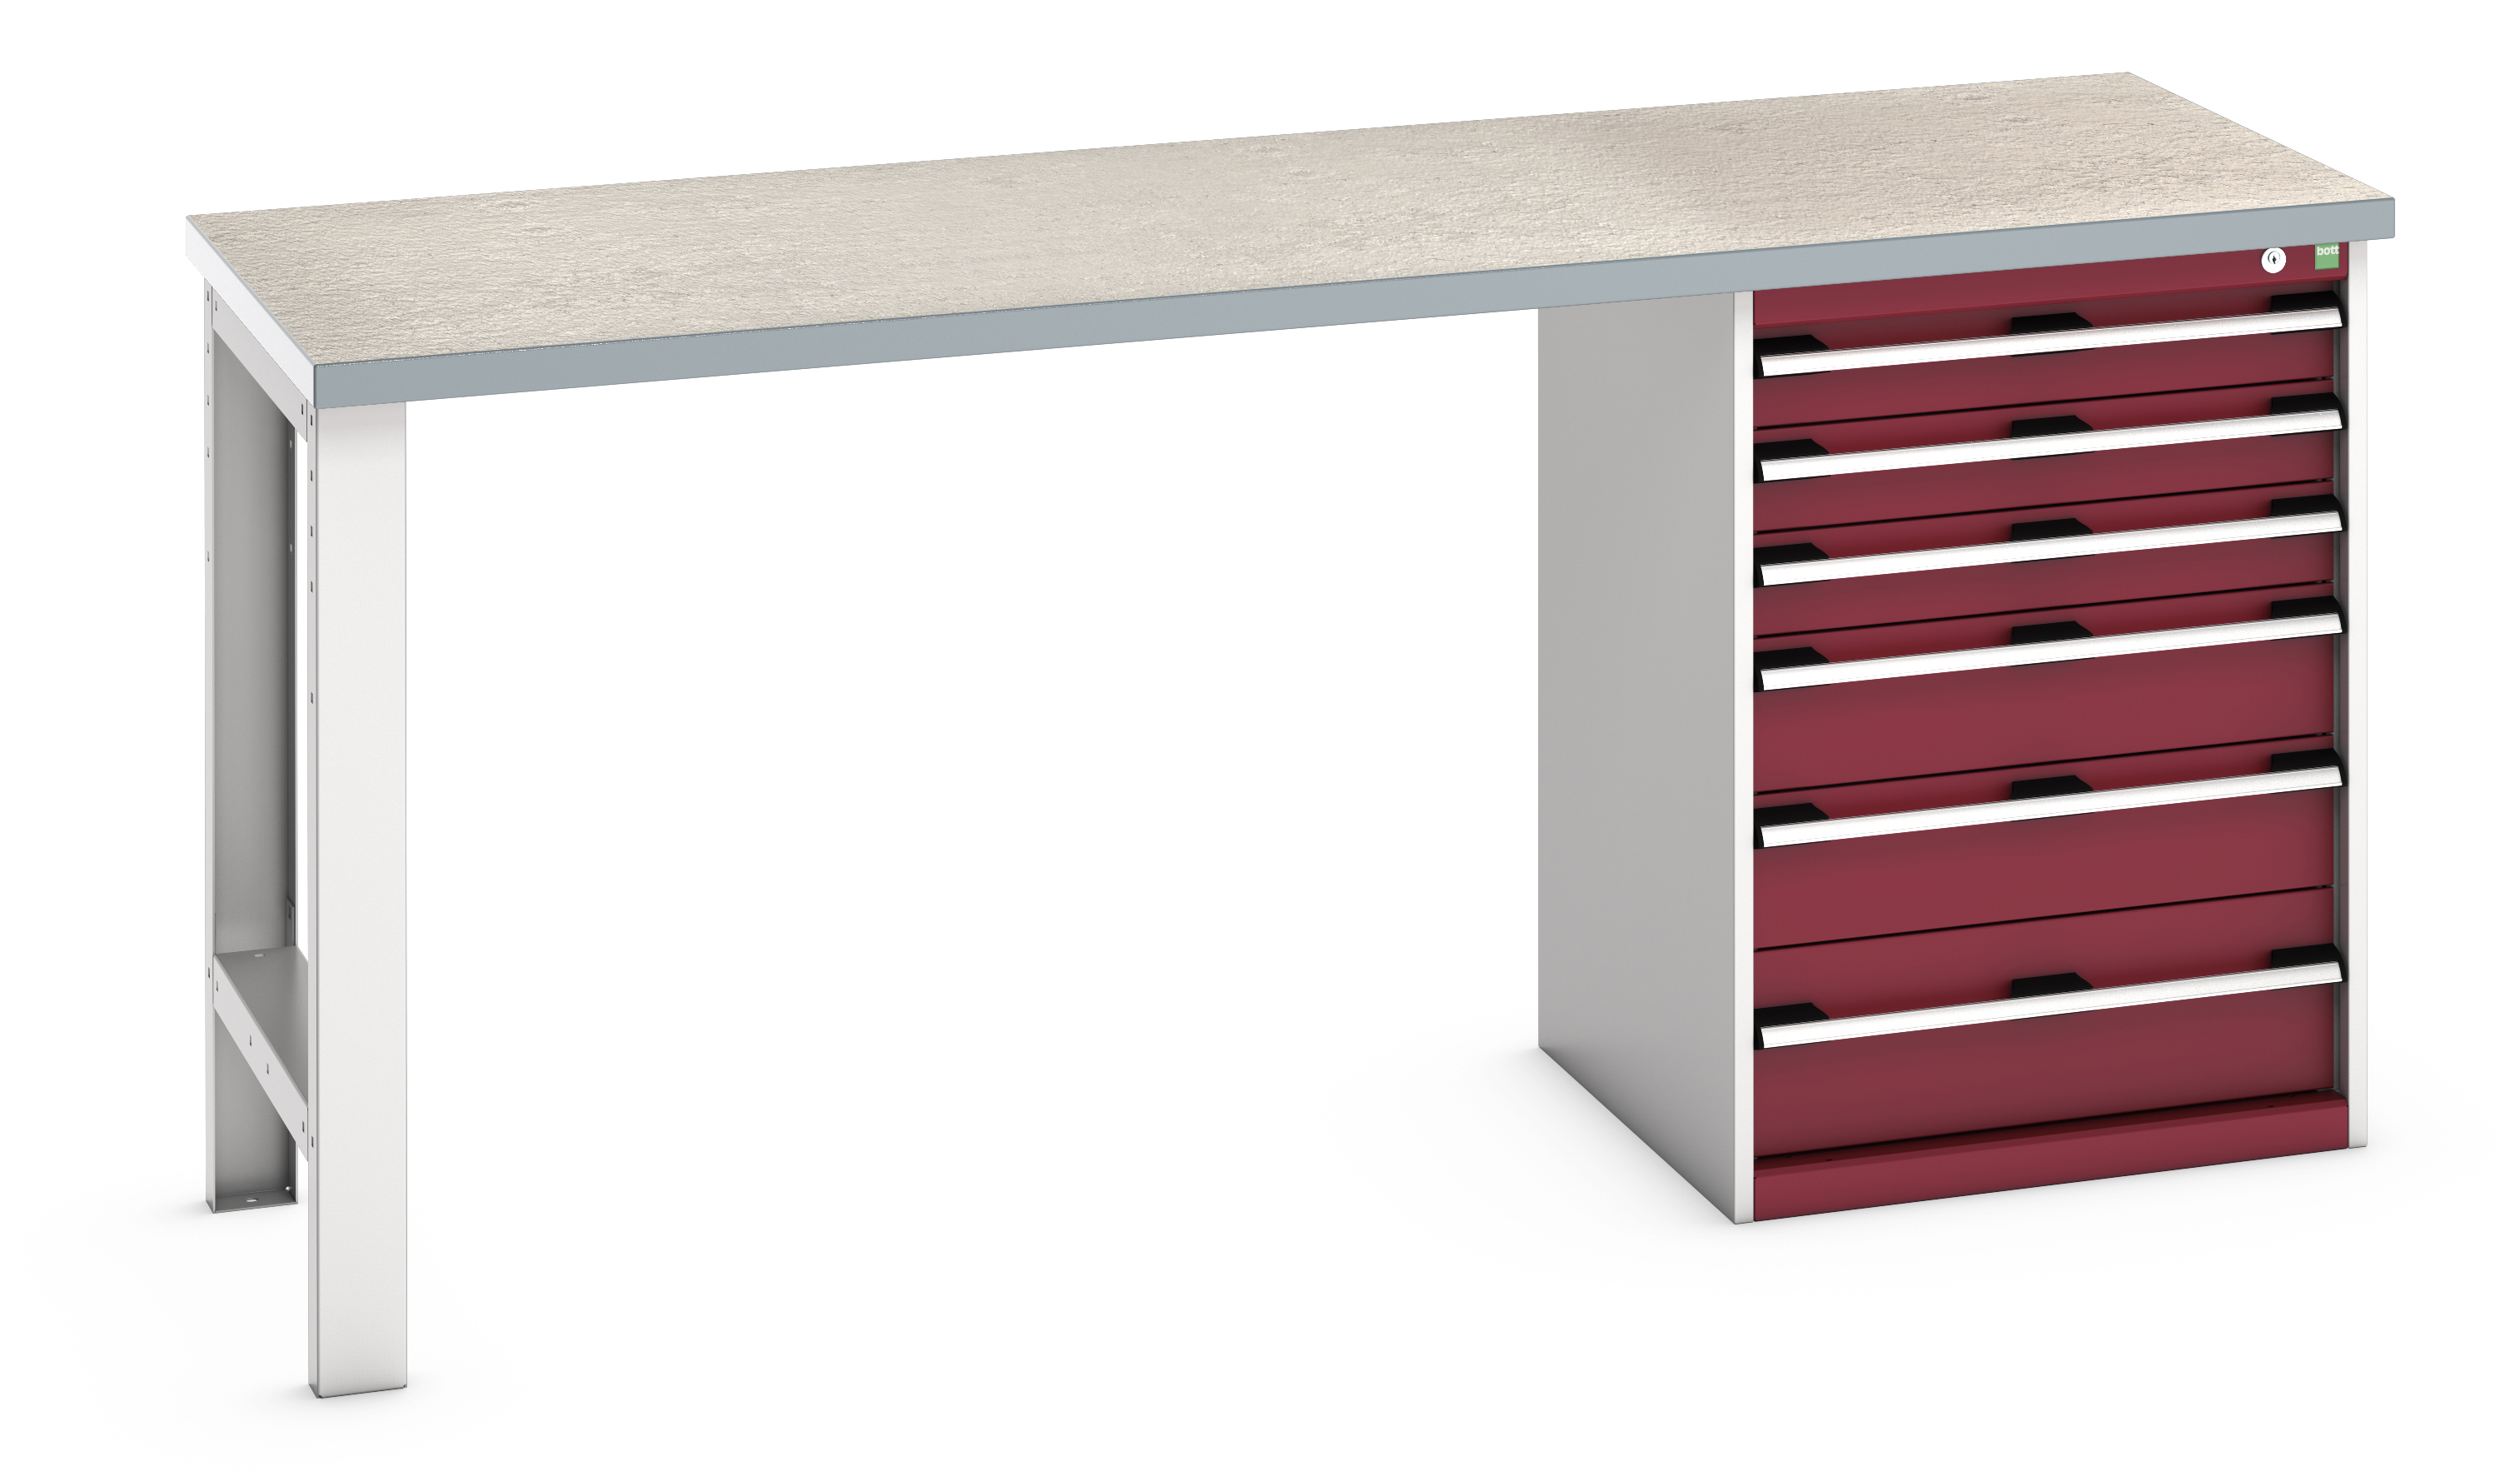 Bott Cubio Pedestal Bench With 6 Drawer Cabinet - 41003495.24V